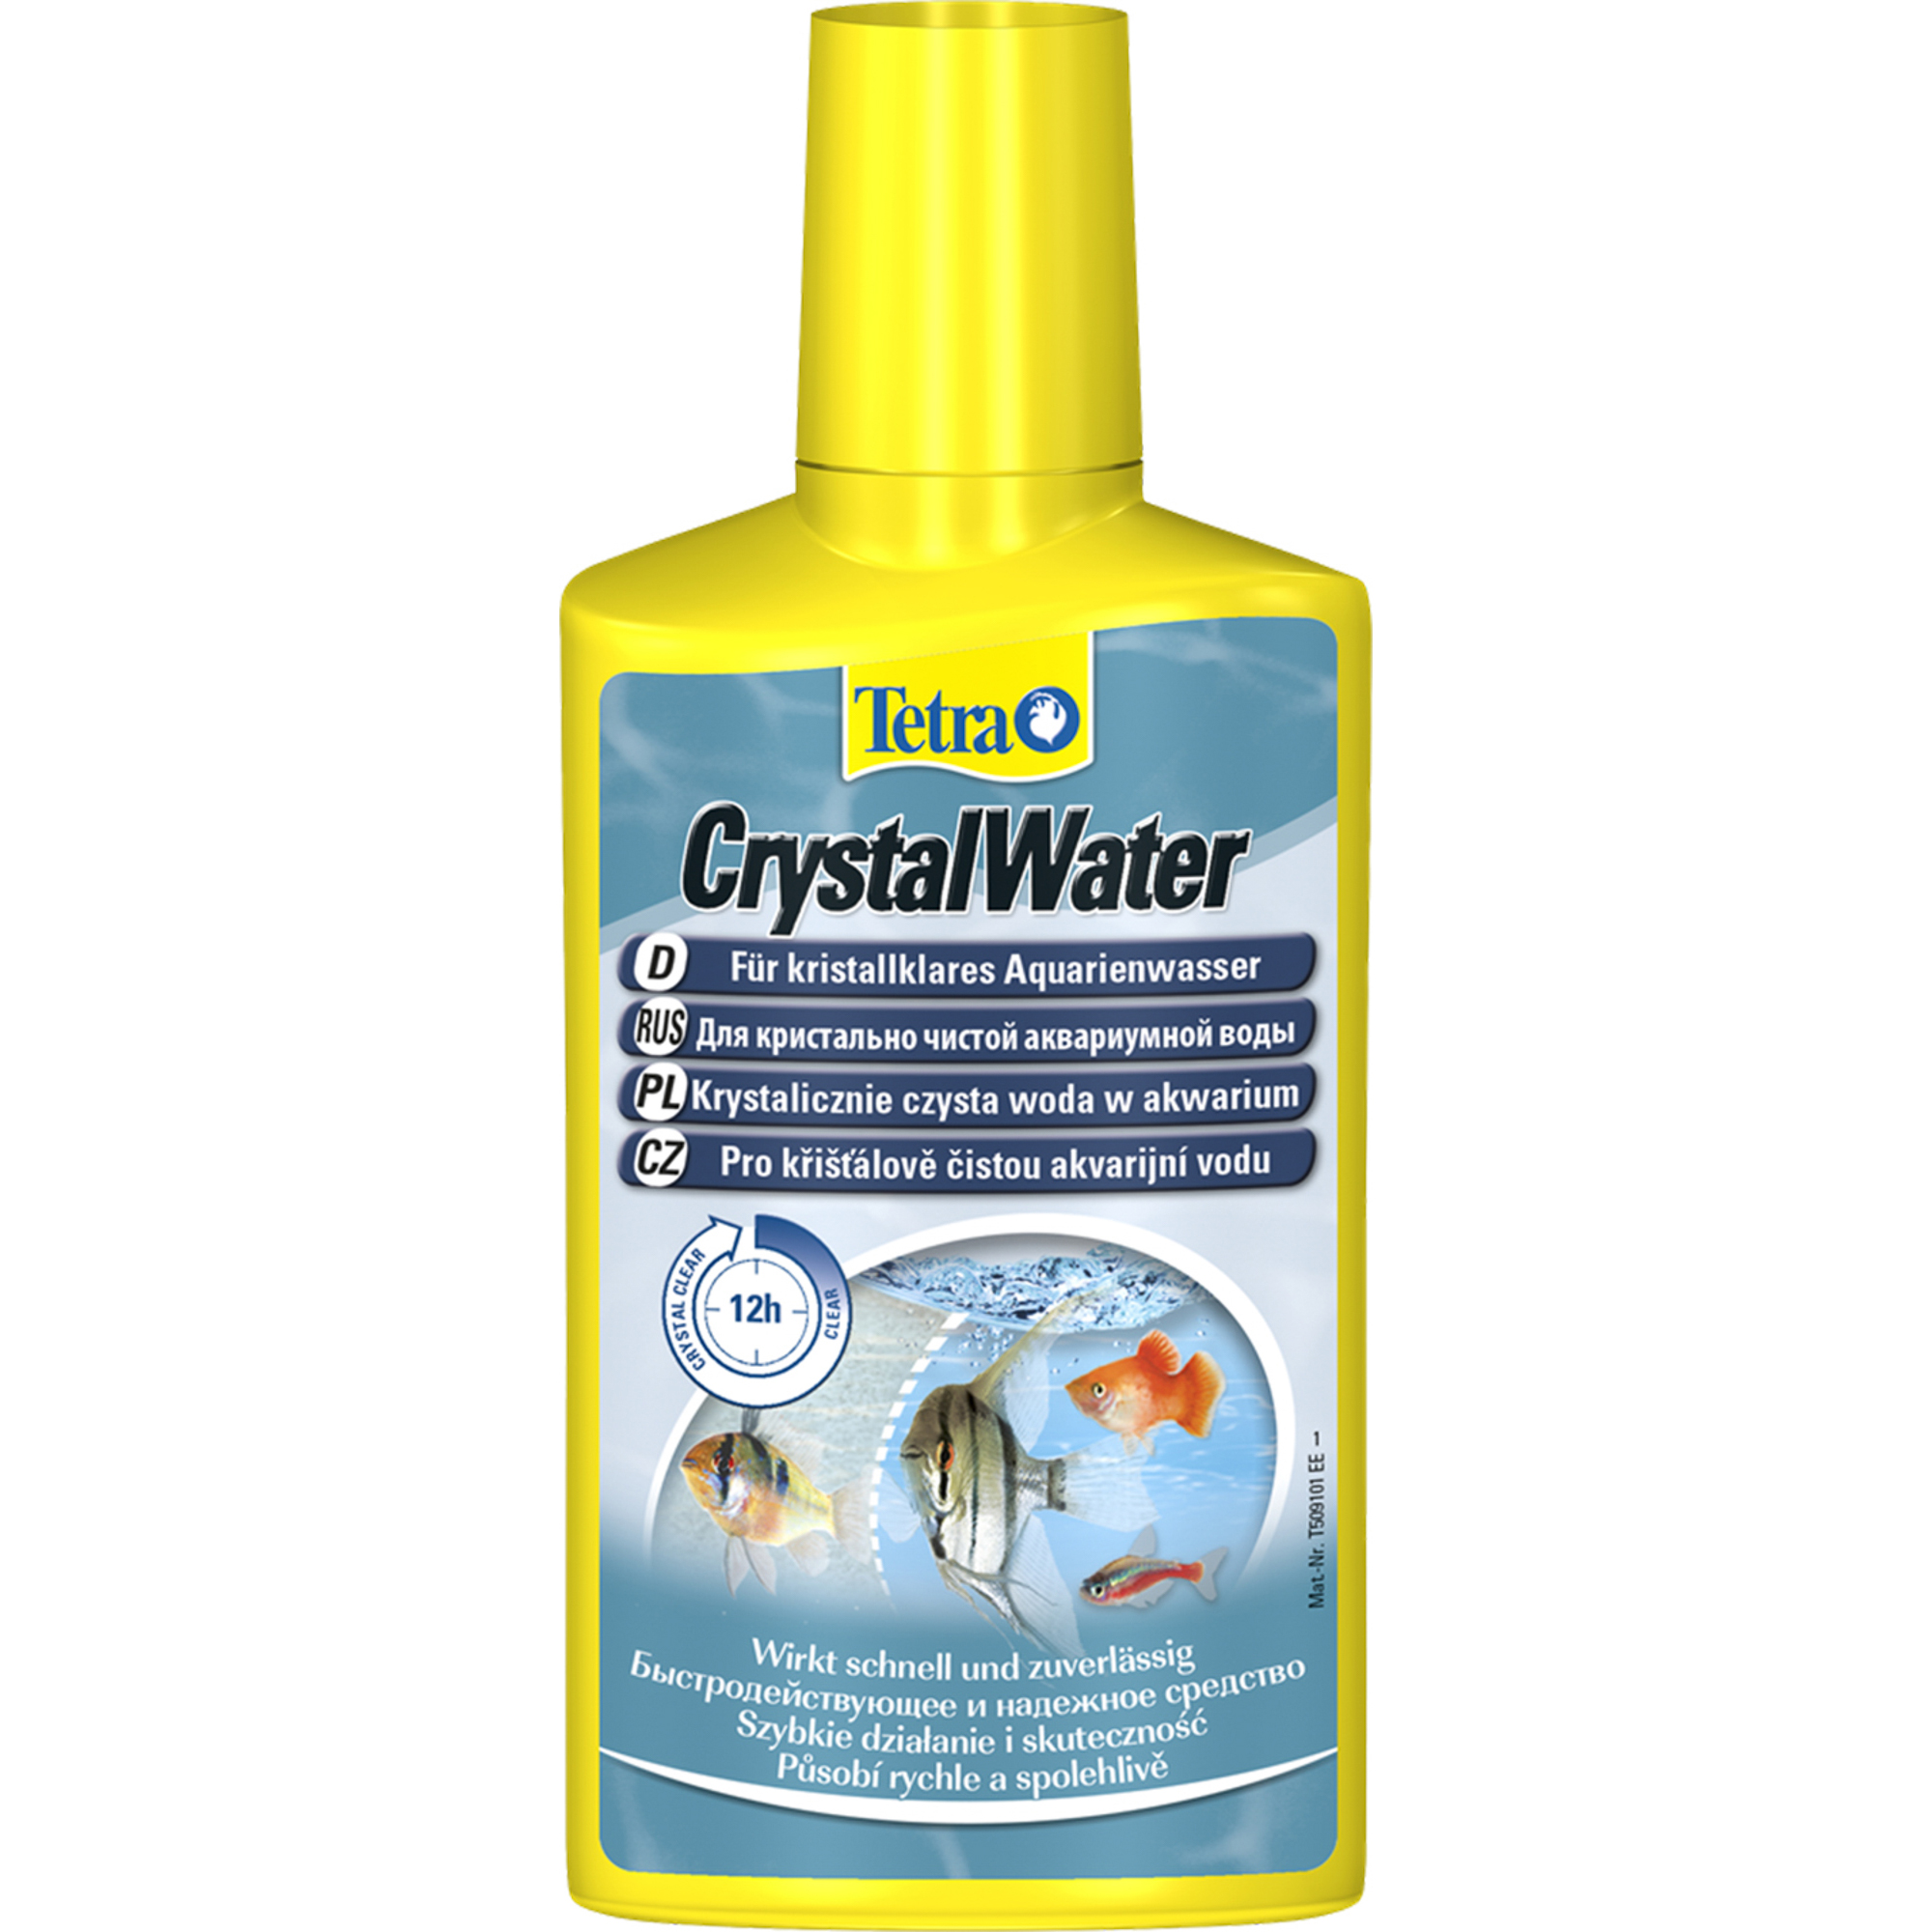 Кондиционер для очистки воды TETRA Crystal Water 250мл tetra easy crystal filter 300 внутренний фильтр для аквариума 40 60 л 300 л ч